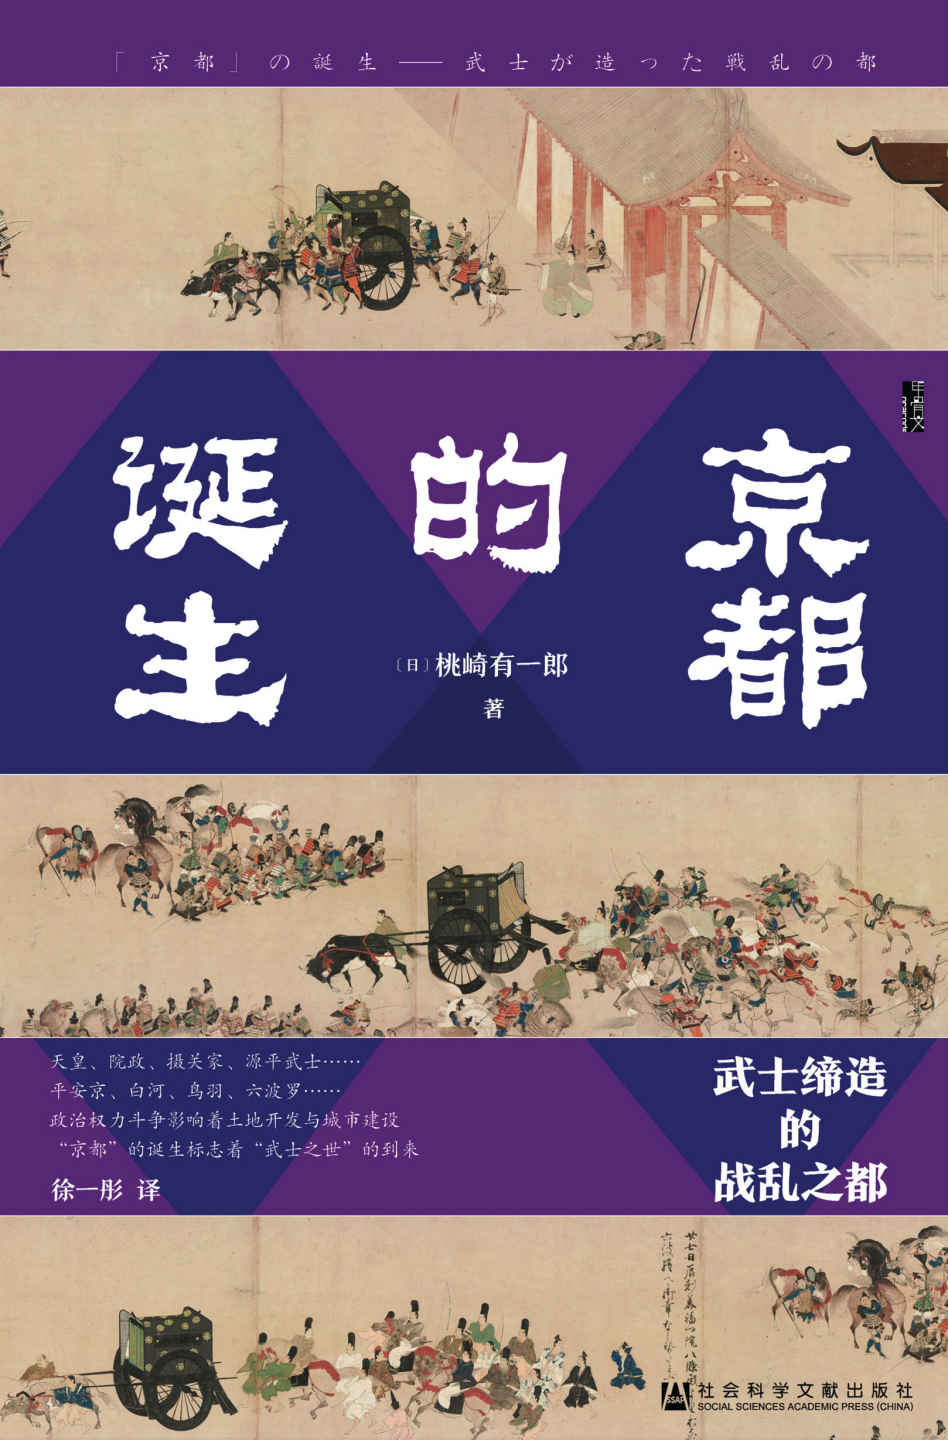 《京都的诞生:武士缔造的战乱之都》-azw3,mobi,epub,pdf,txt,kindle电子书免费下载